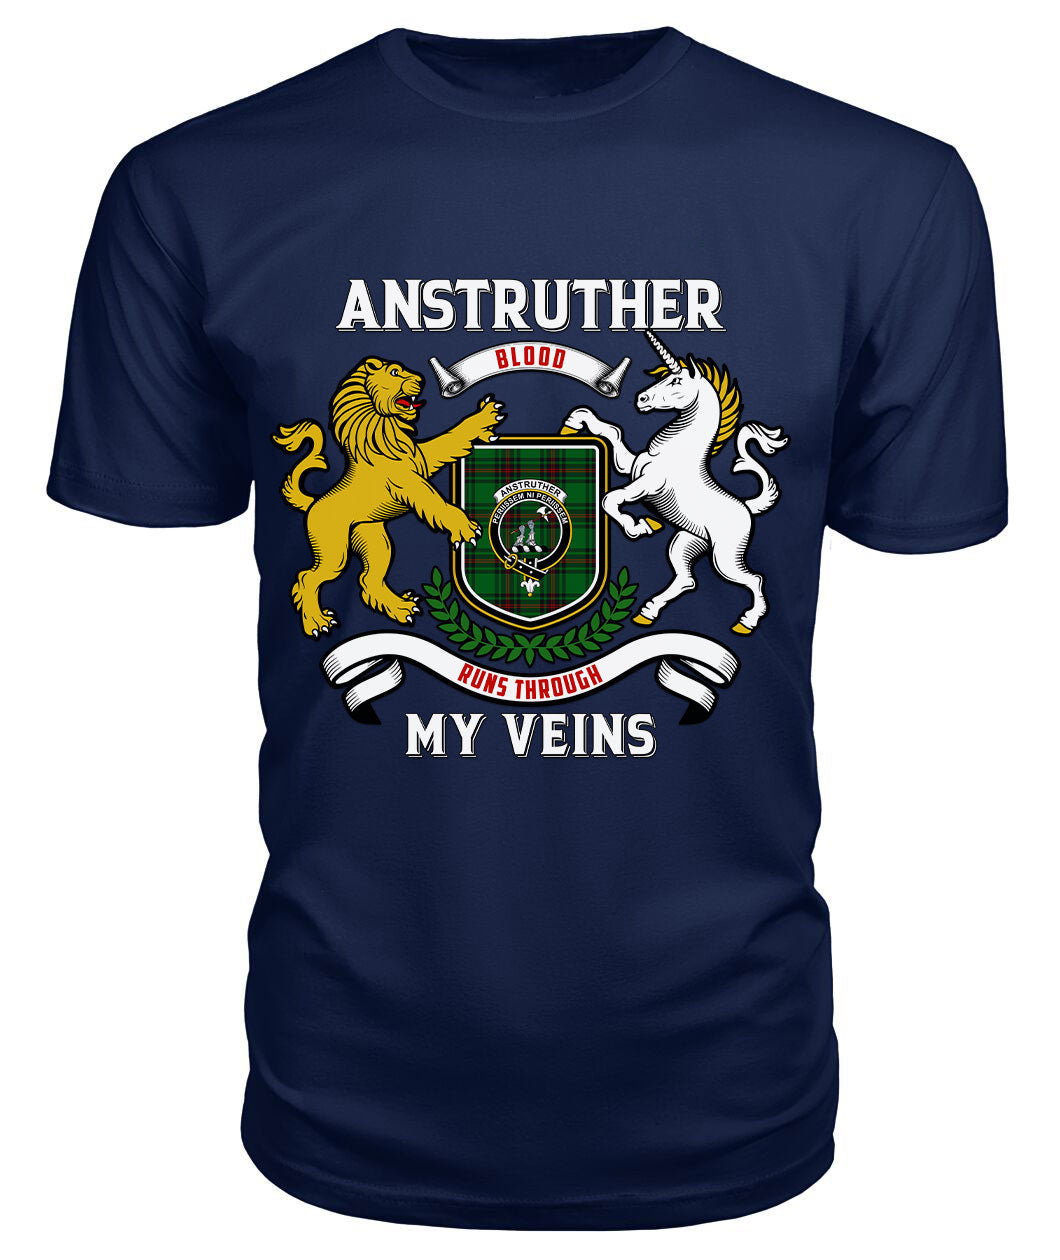 Anstruther Tartan Crest 2D T-shirt - Blood Runs Through My Veins Style